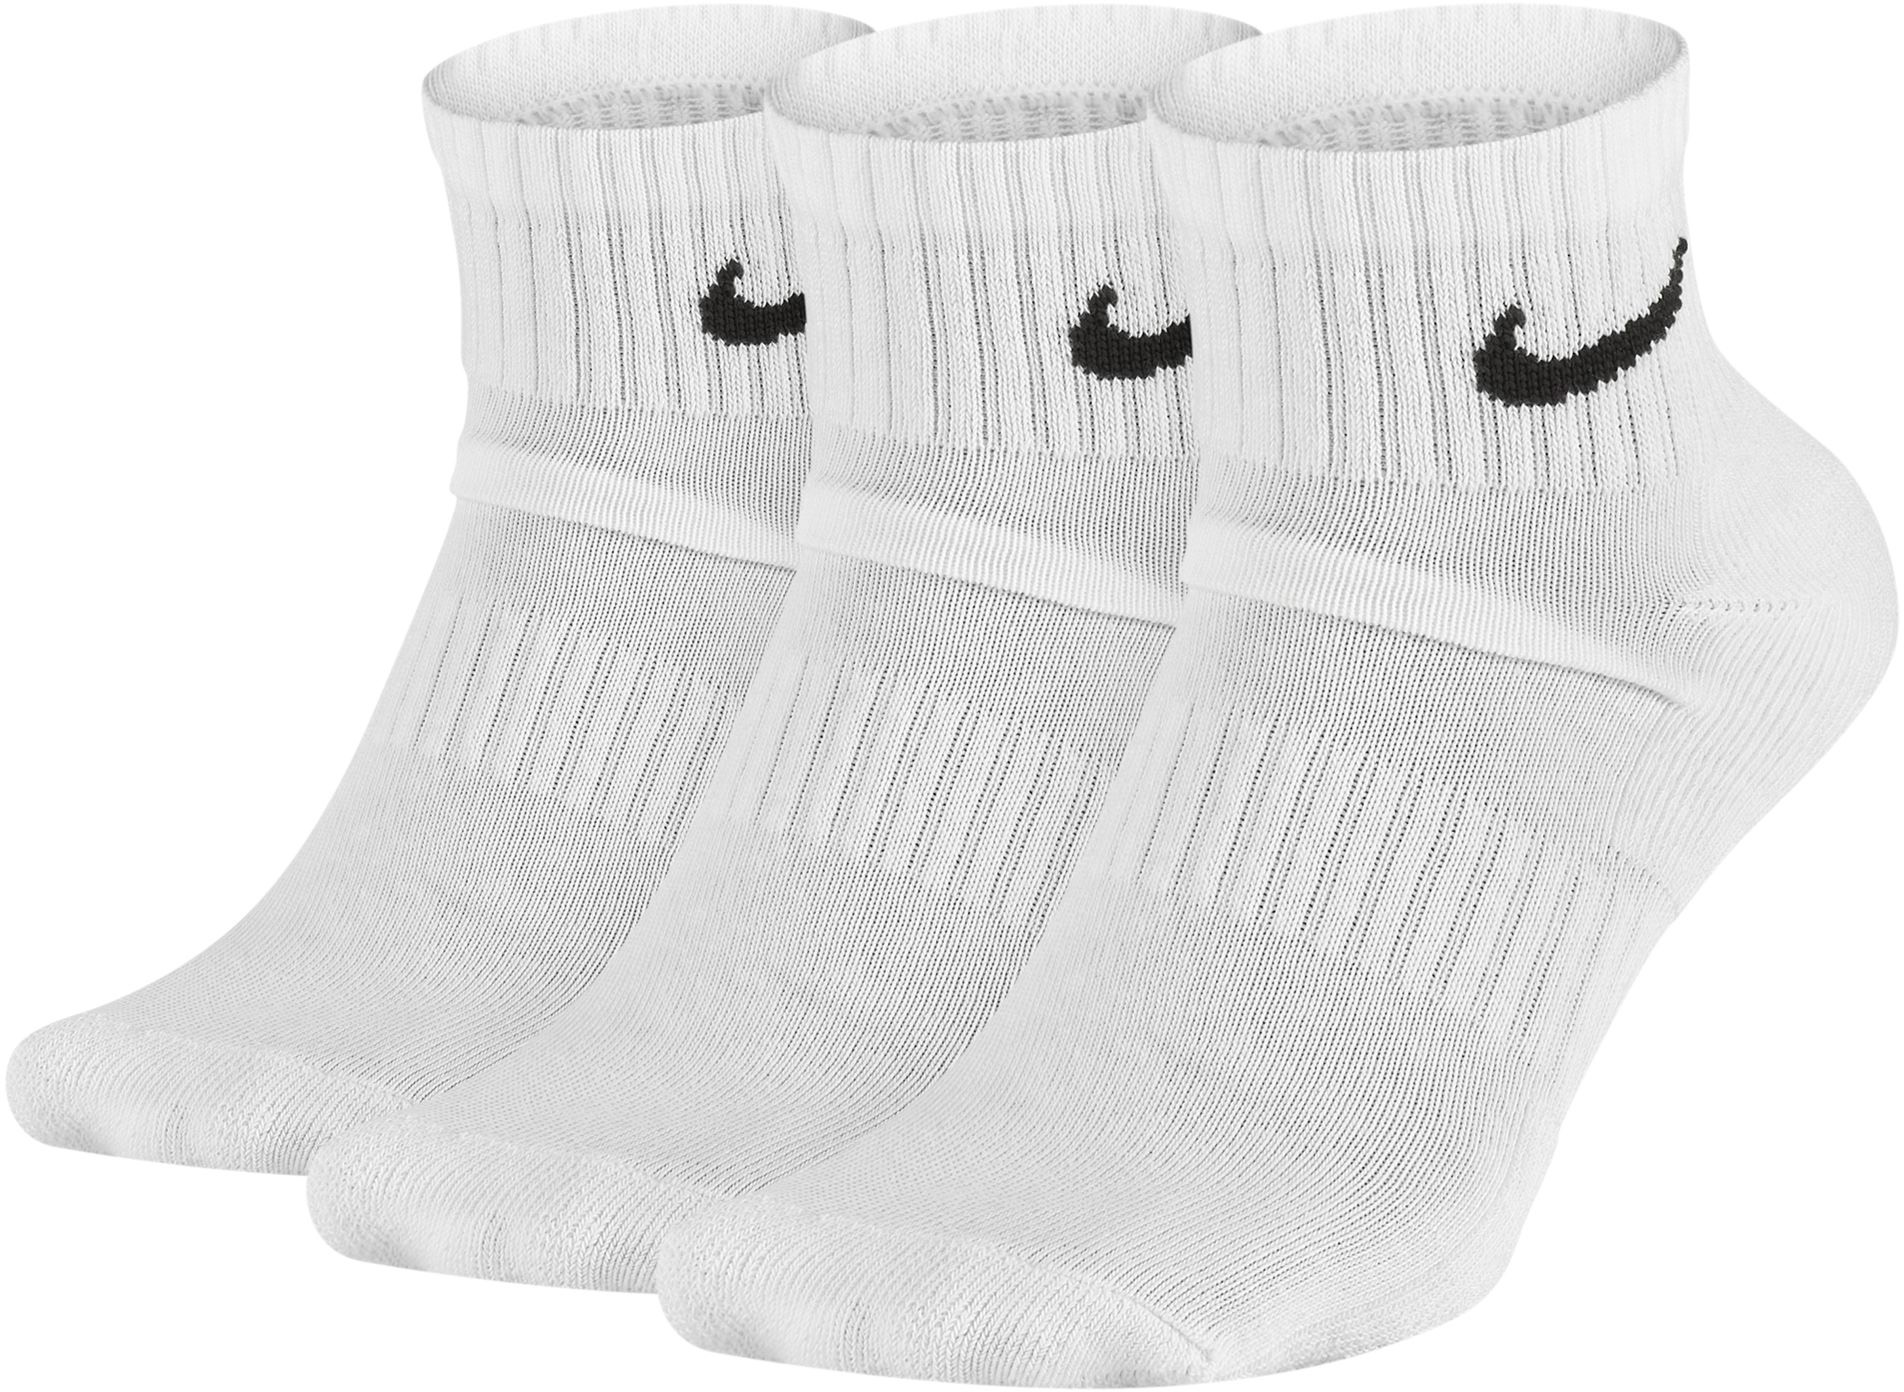 Nike Cushioned Calcetines largos de entrenamiento (3 pares)